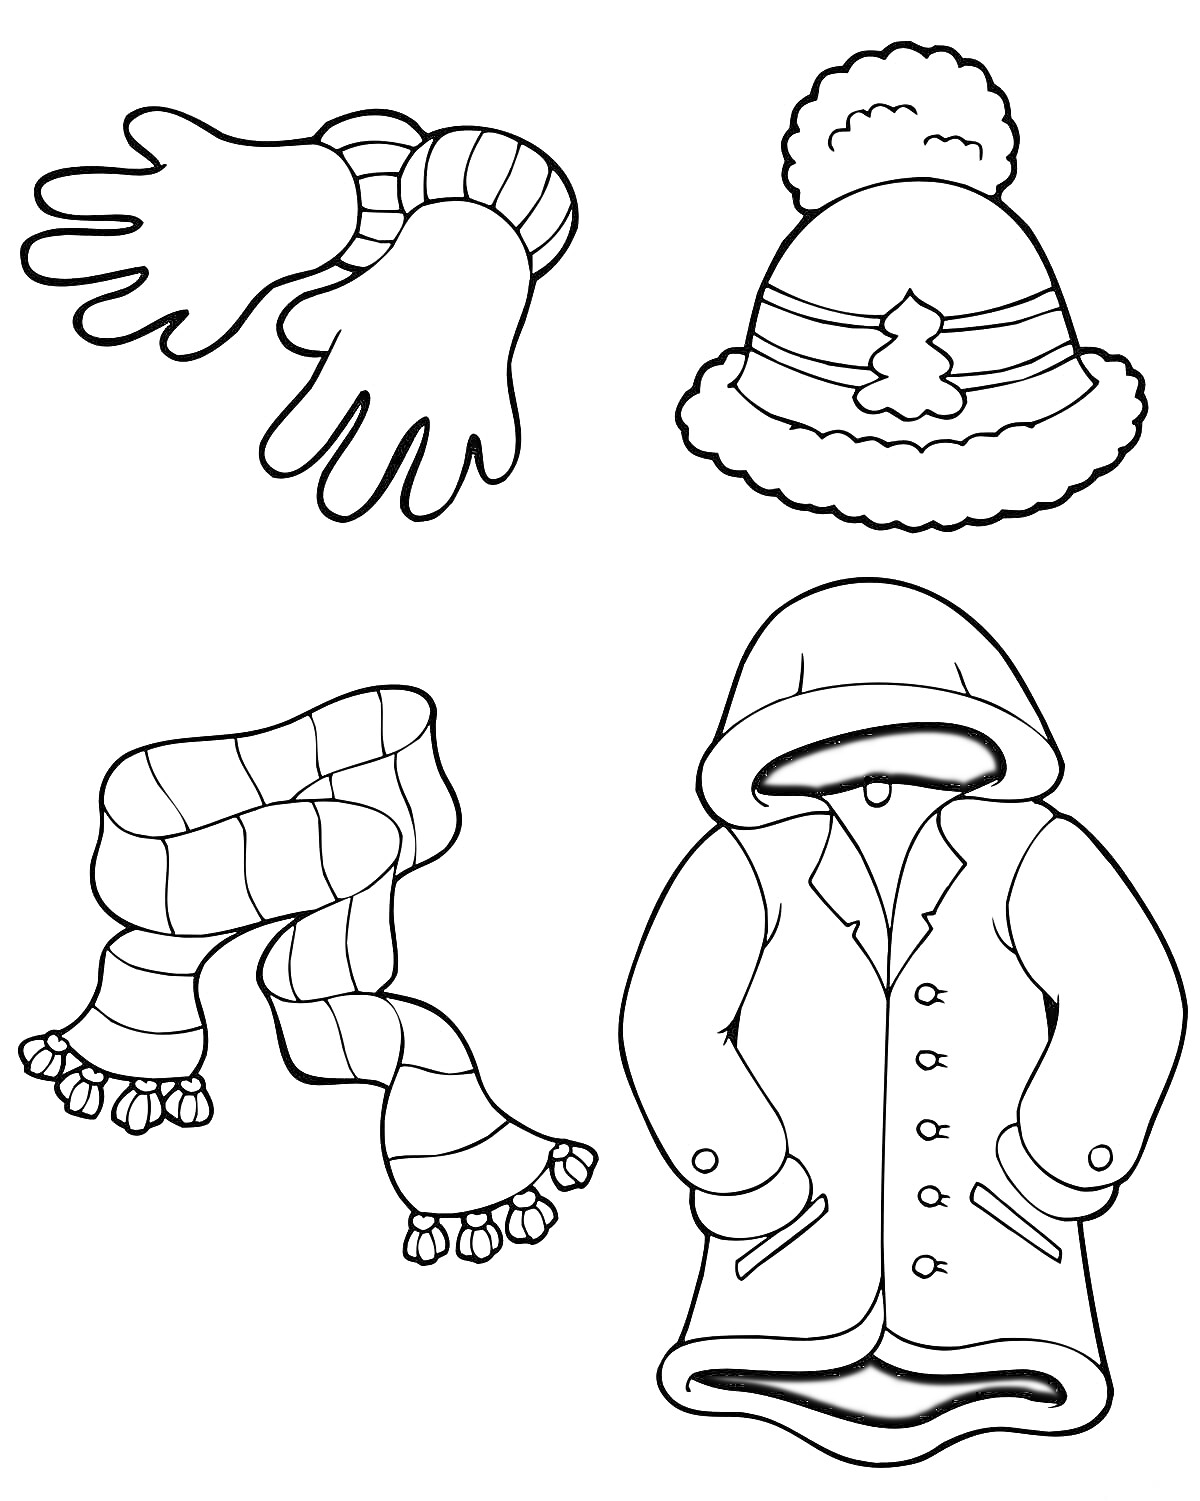 Зимняя одежда - варежки, шапка, шарф, пальто